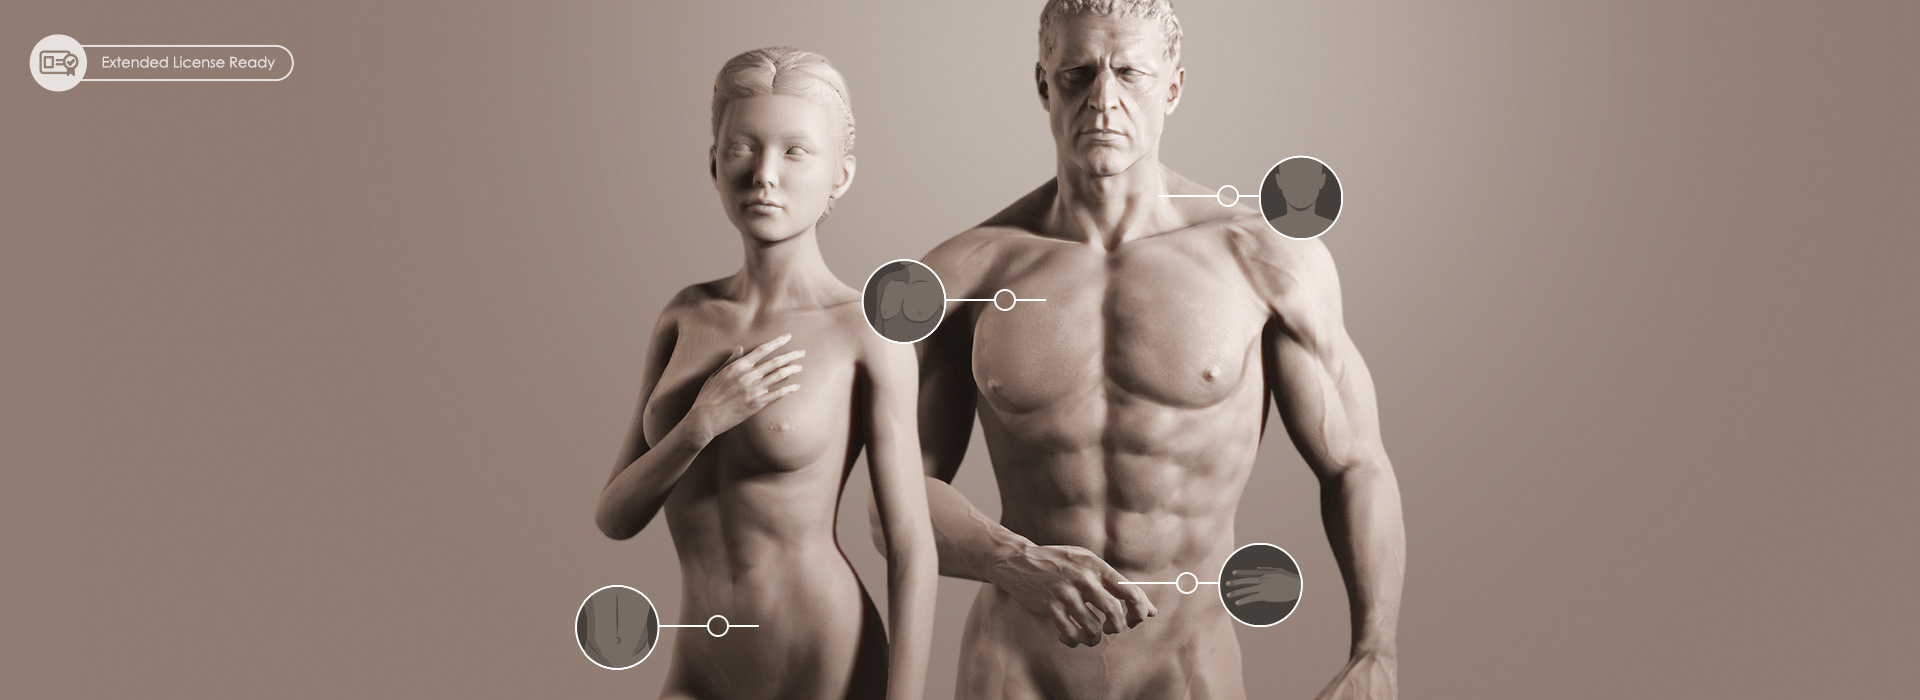 body morph-digital human